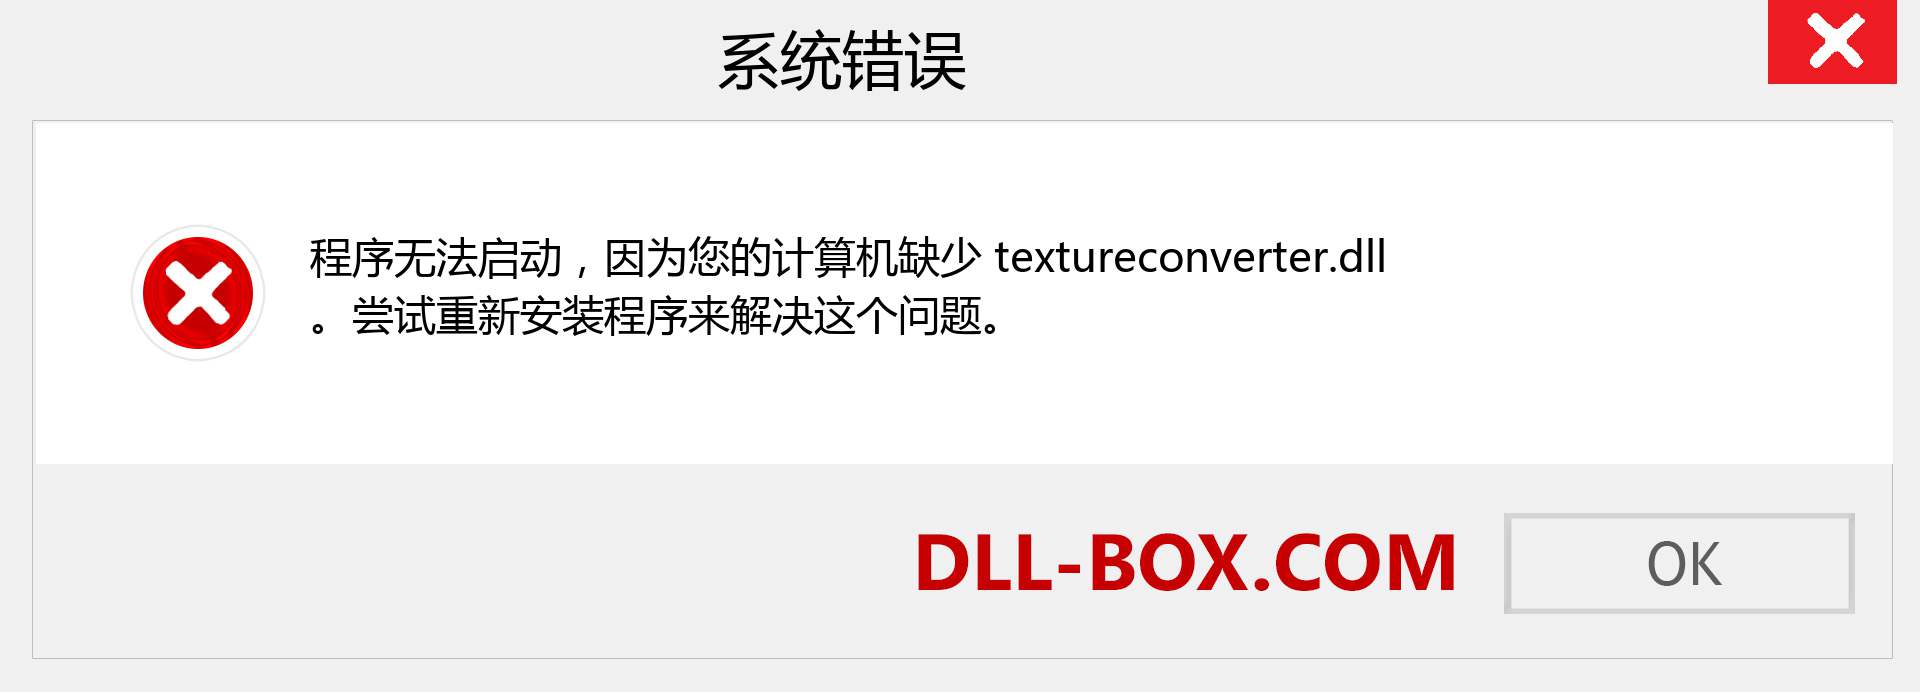 textureconverter.dll 文件丢失？。 适用于 Windows 7、8、10 的下载 - 修复 Windows、照片、图像上的 textureconverter dll 丢失错误